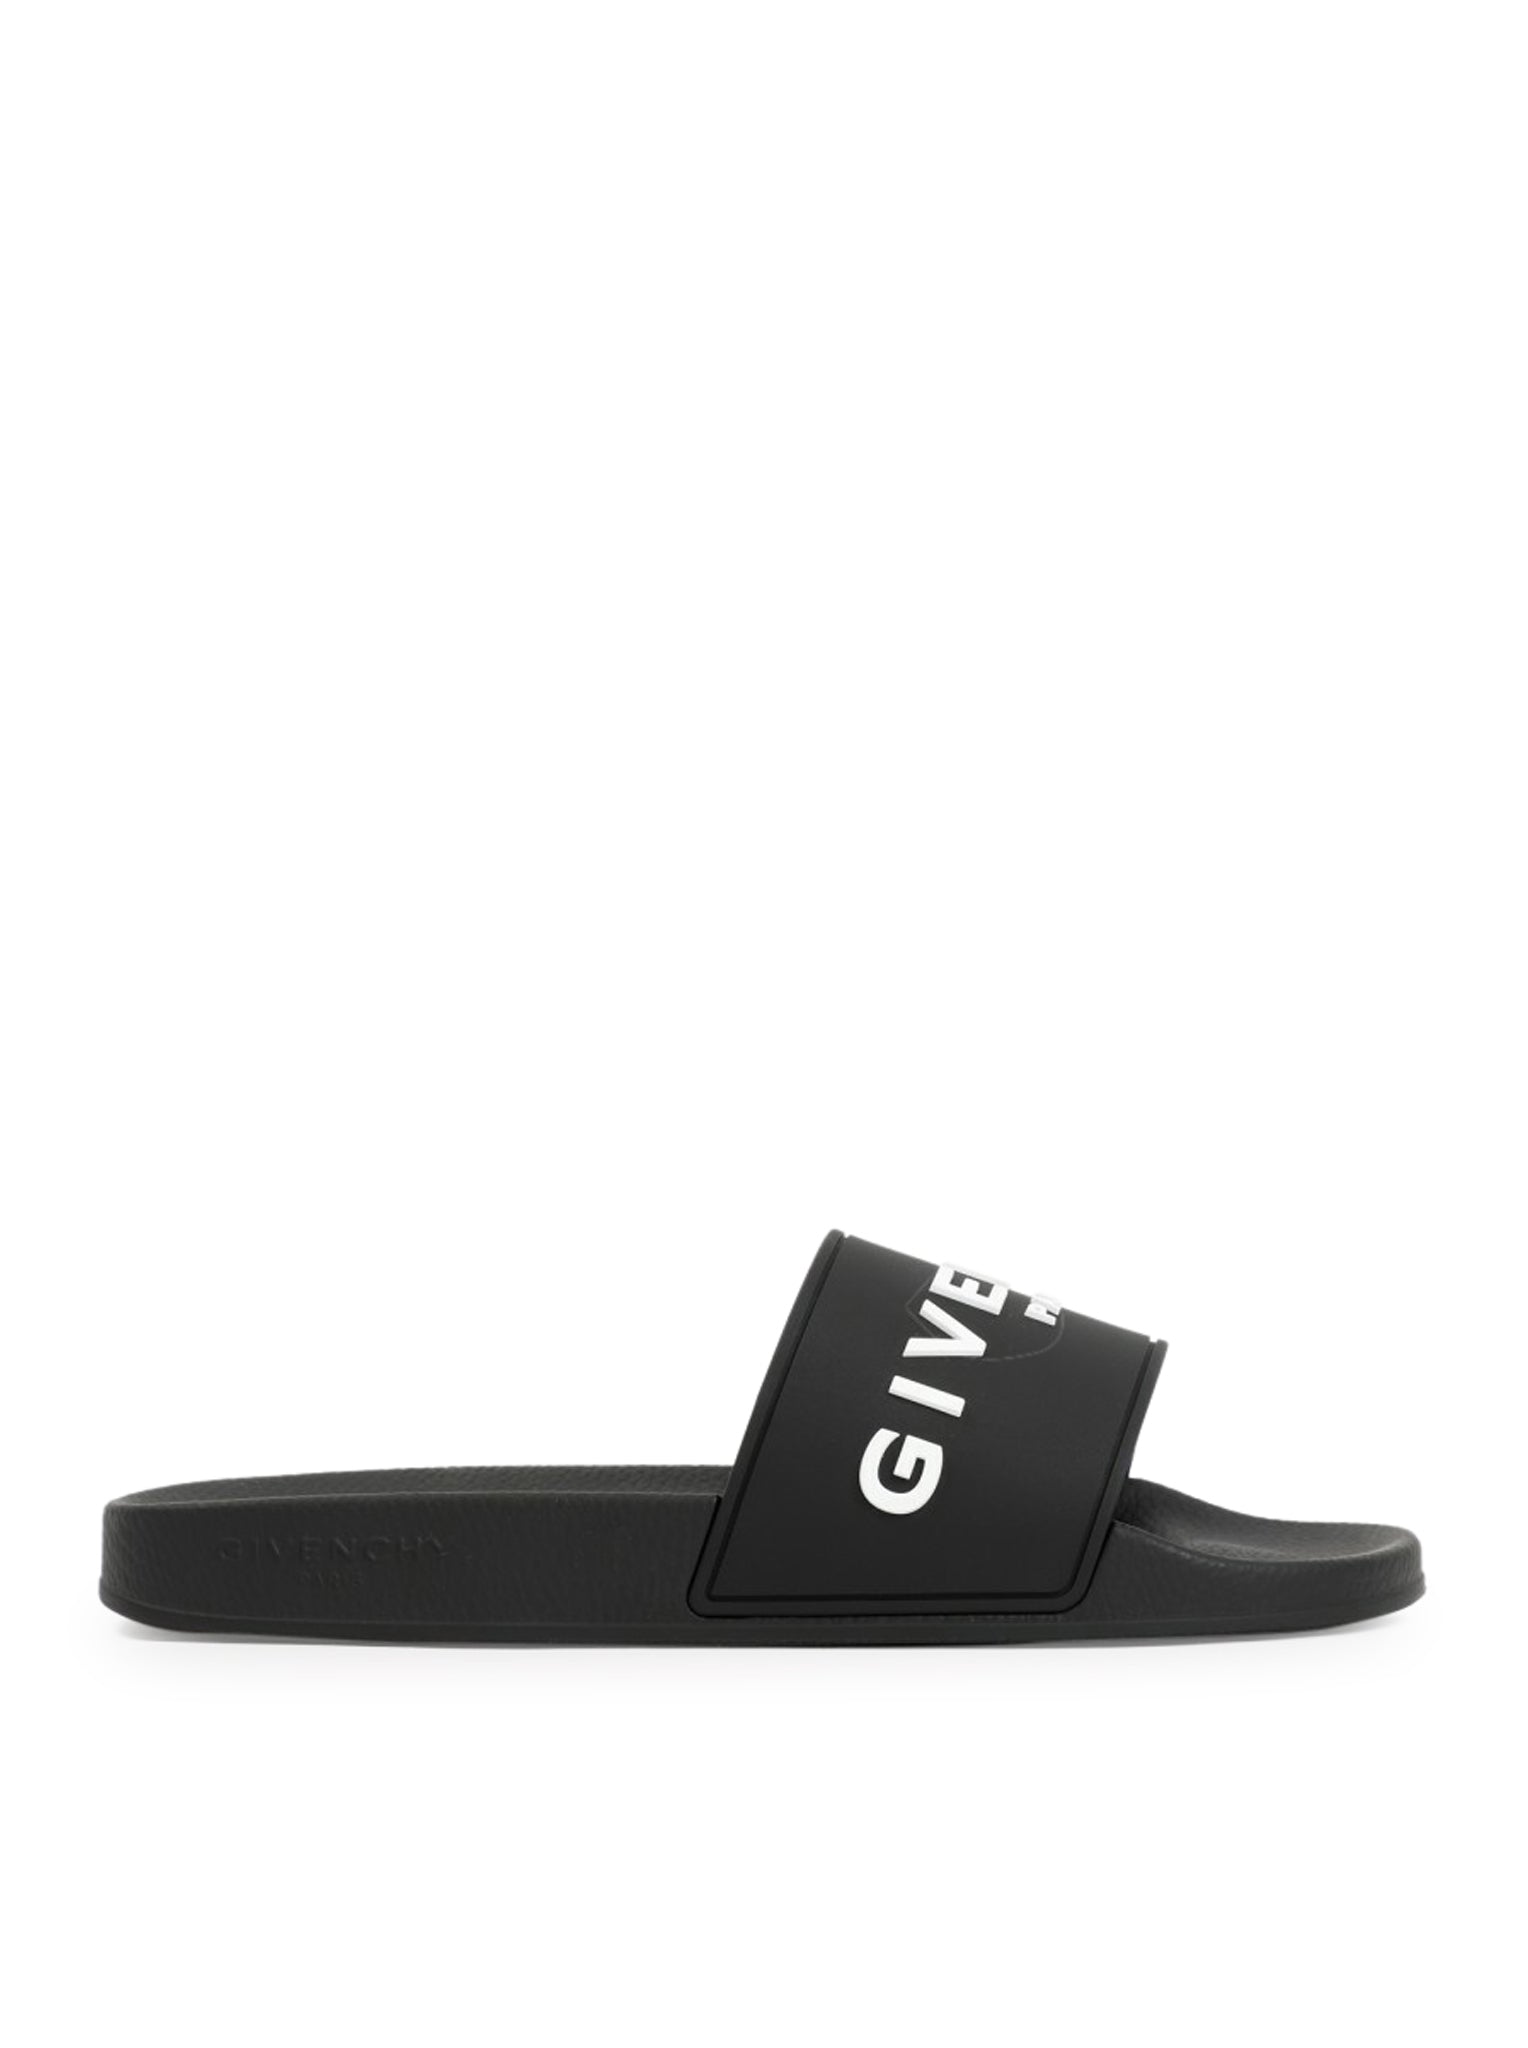 Givenchy Black Rubber Logo Slides